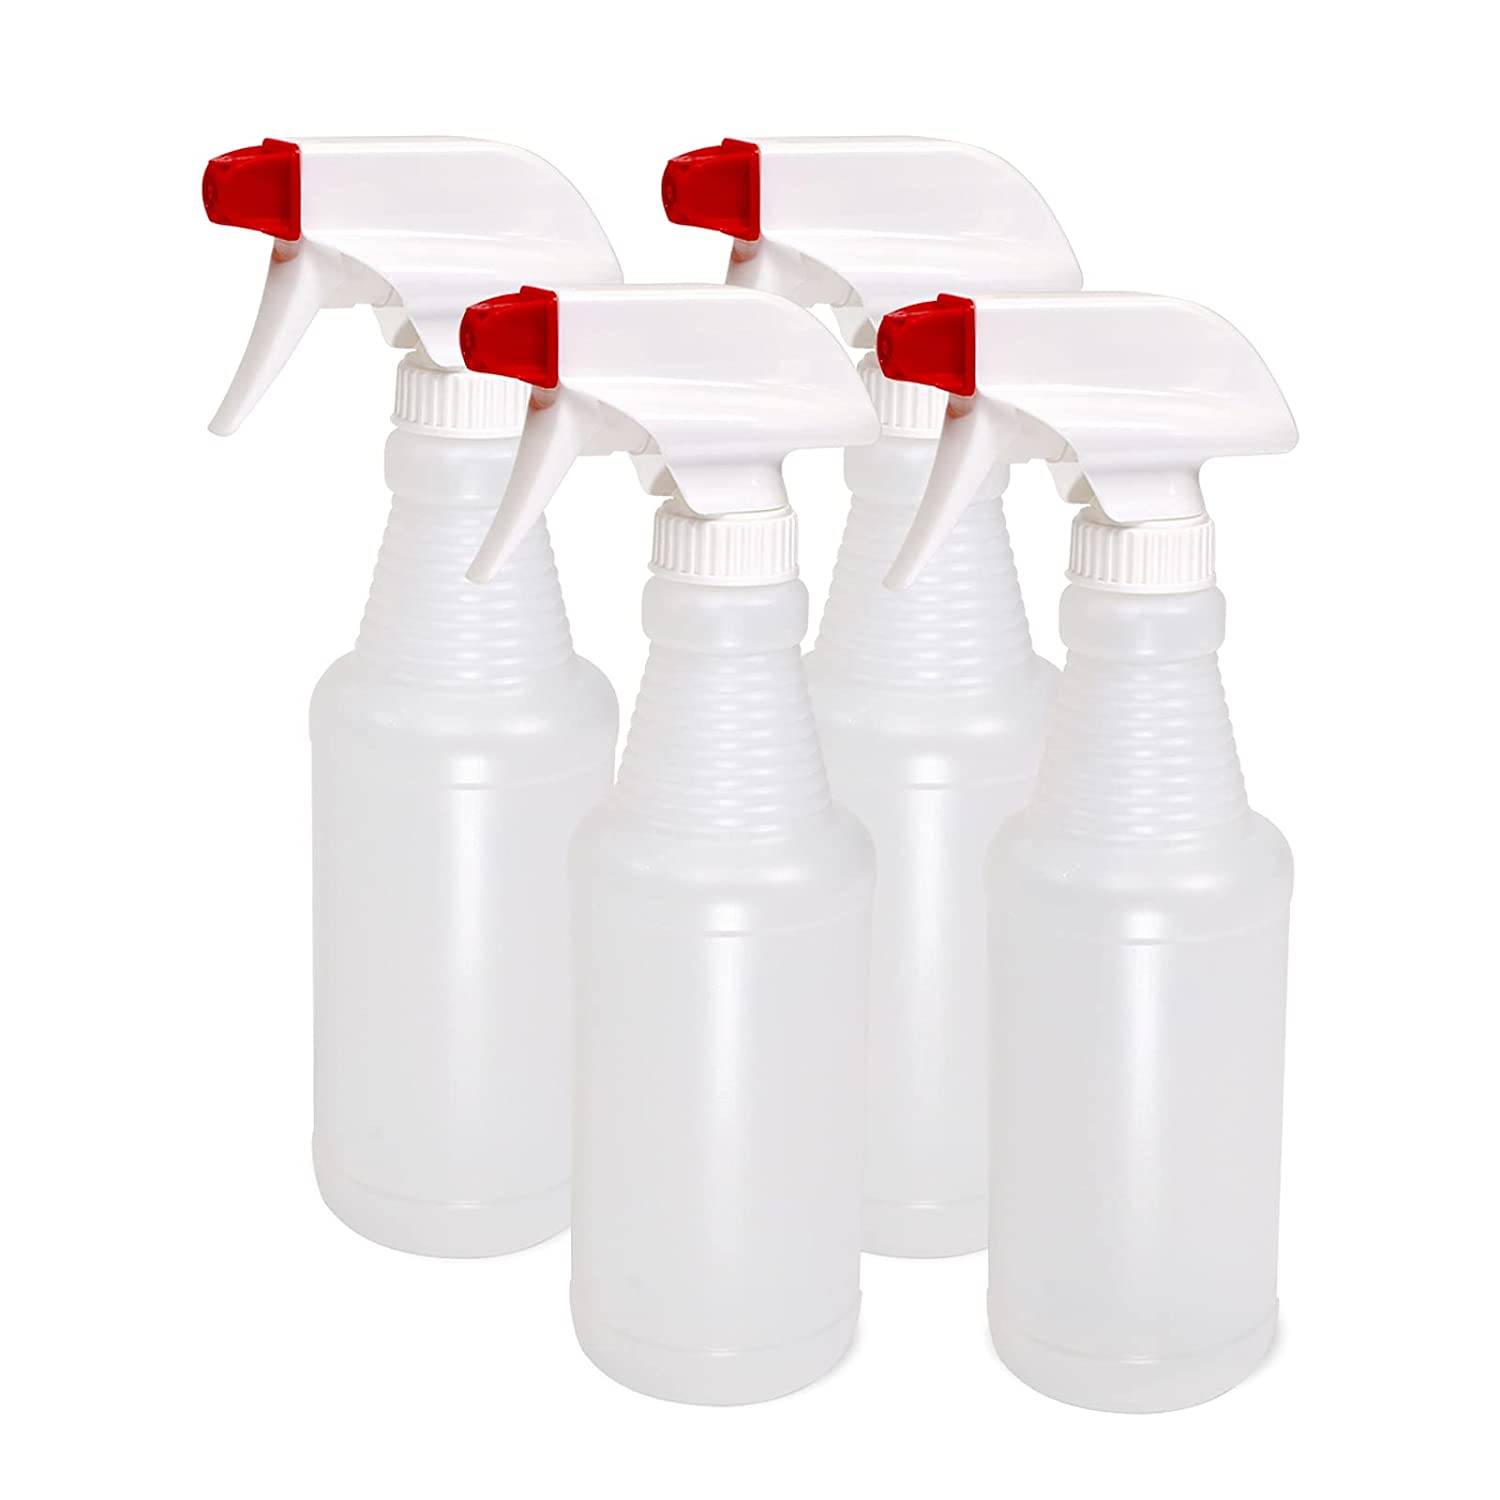 Pinnacle Mercantile Leak Proof Plastic Spray Bottle, 4-Pack